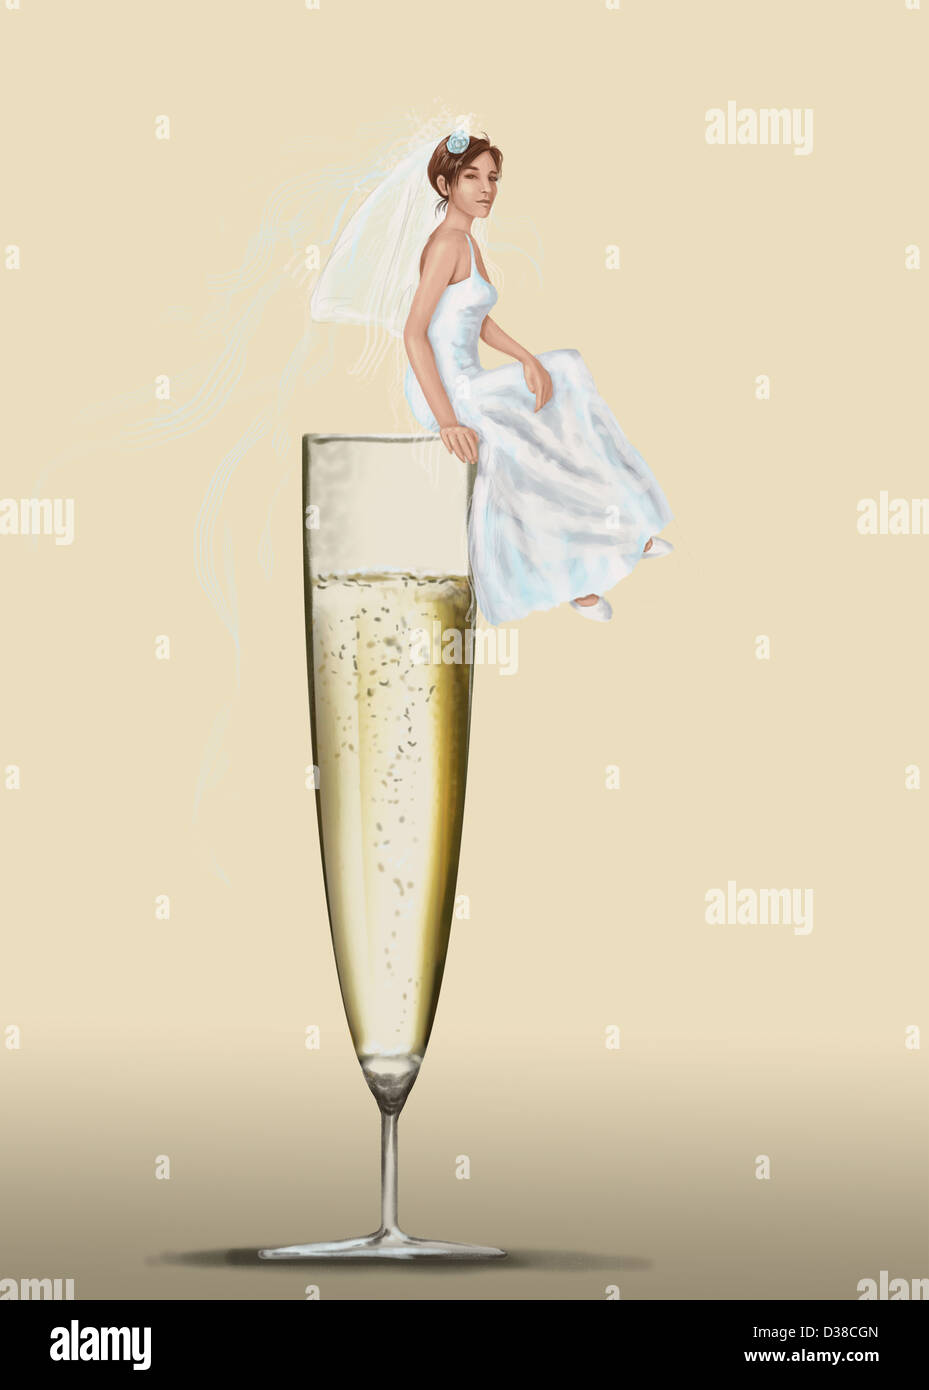 Immagine illustrativa della sposa seduta sulla flûte di champagne che rappresenta la celebrazione dei matrimoni Foto Stock